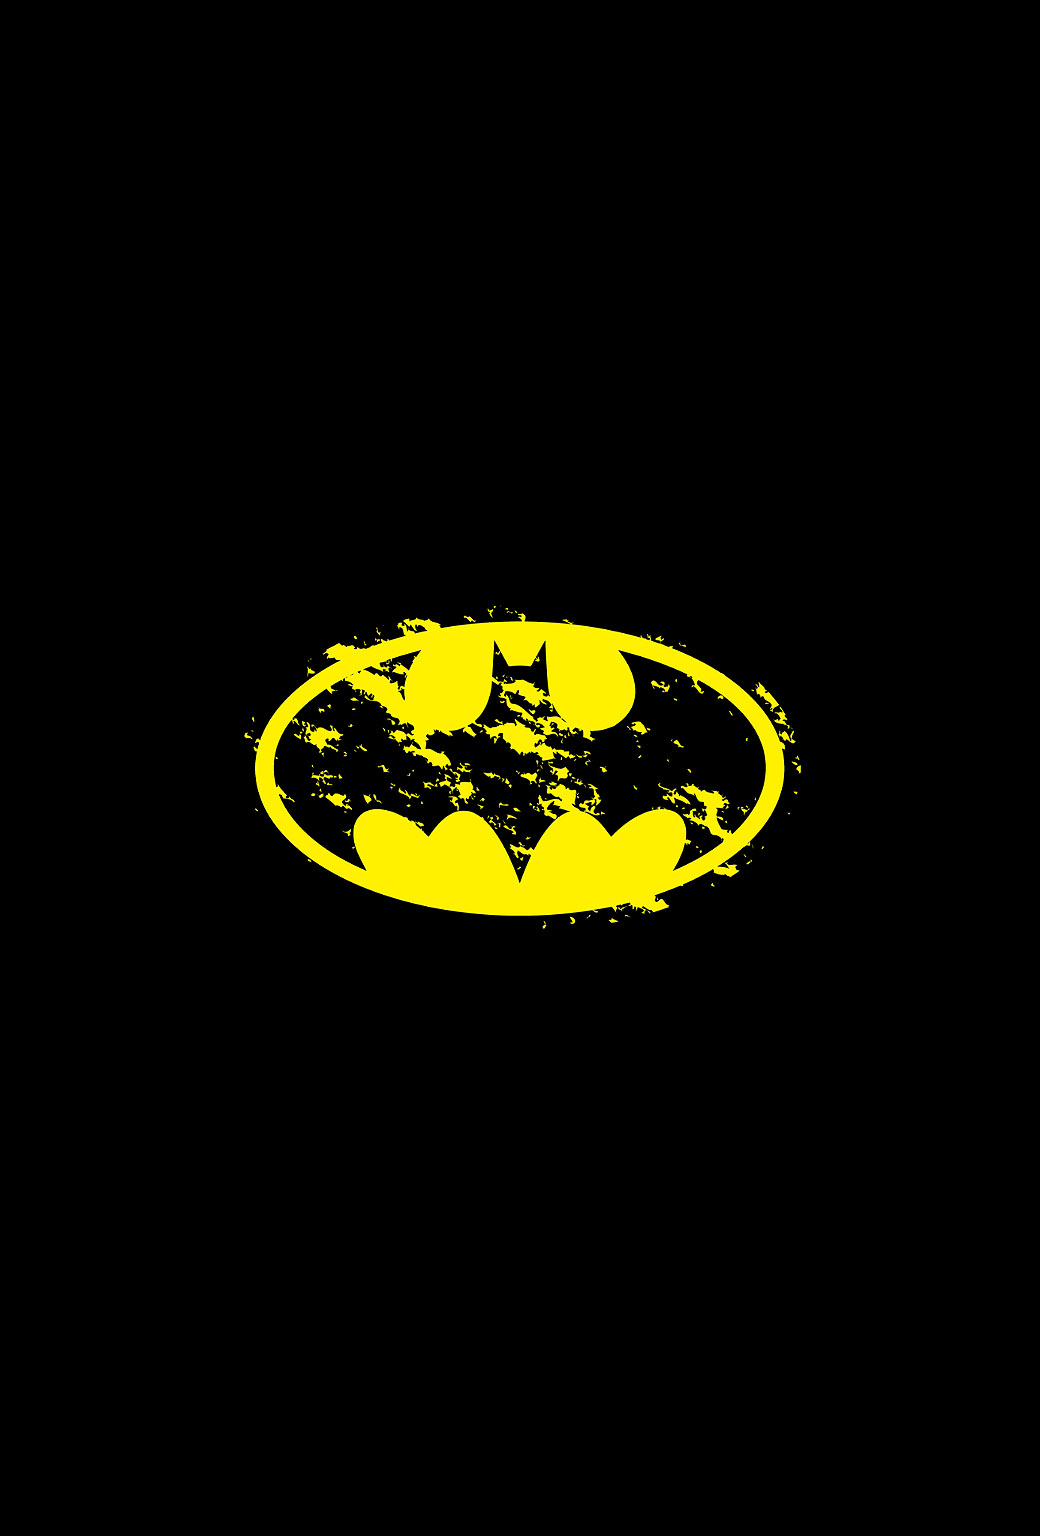 배트맨 로고 아이폰 배경 화면,검정,노랑,배트맨,상징,폰트